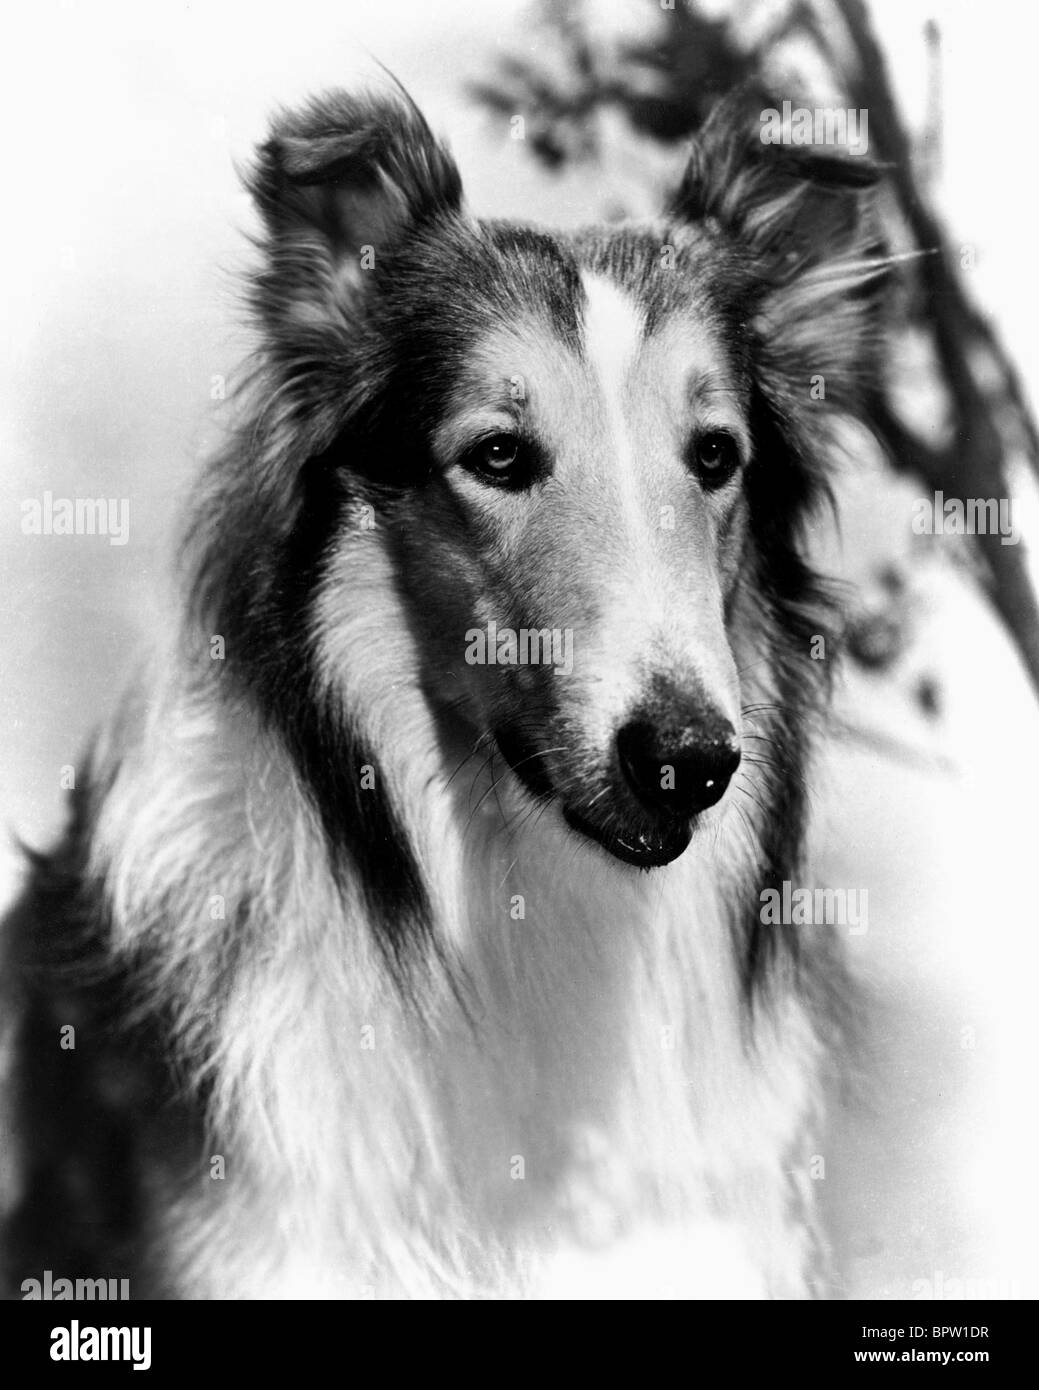 Perro lassie Imágenes de stock en blanco y negro - Alamy